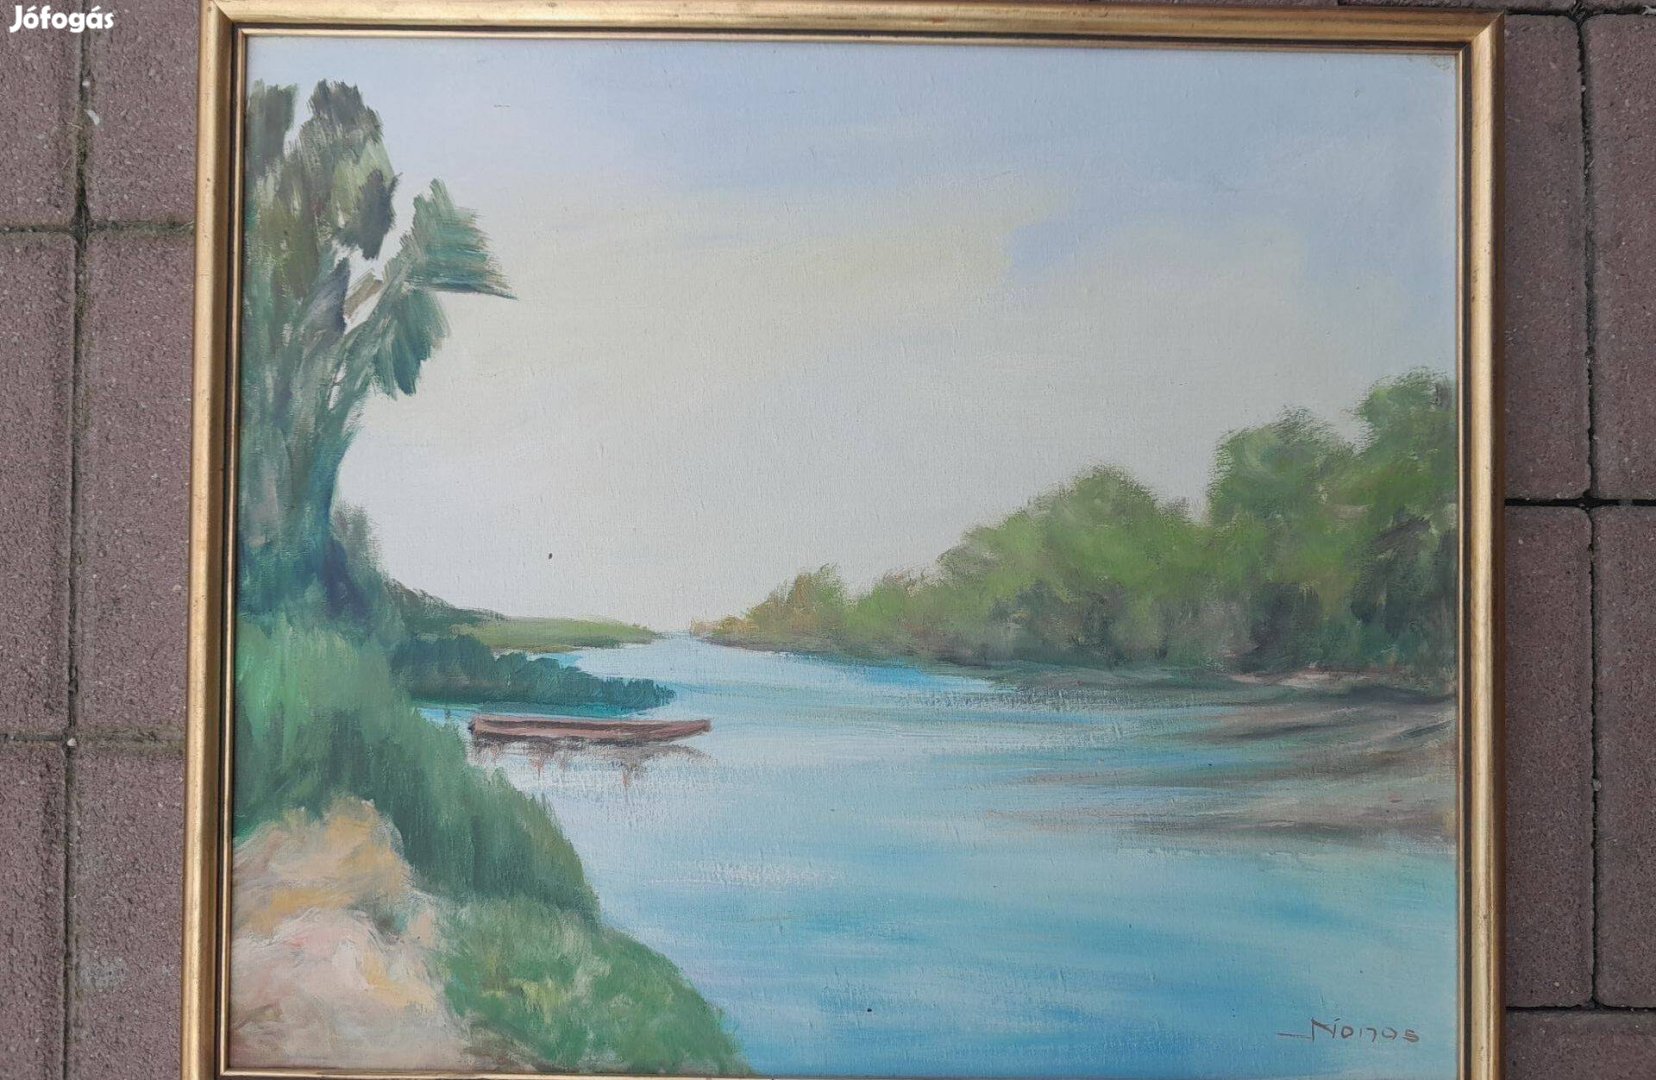 Monos festmény, dunai holtág, olaj-vászon festmény, Duna